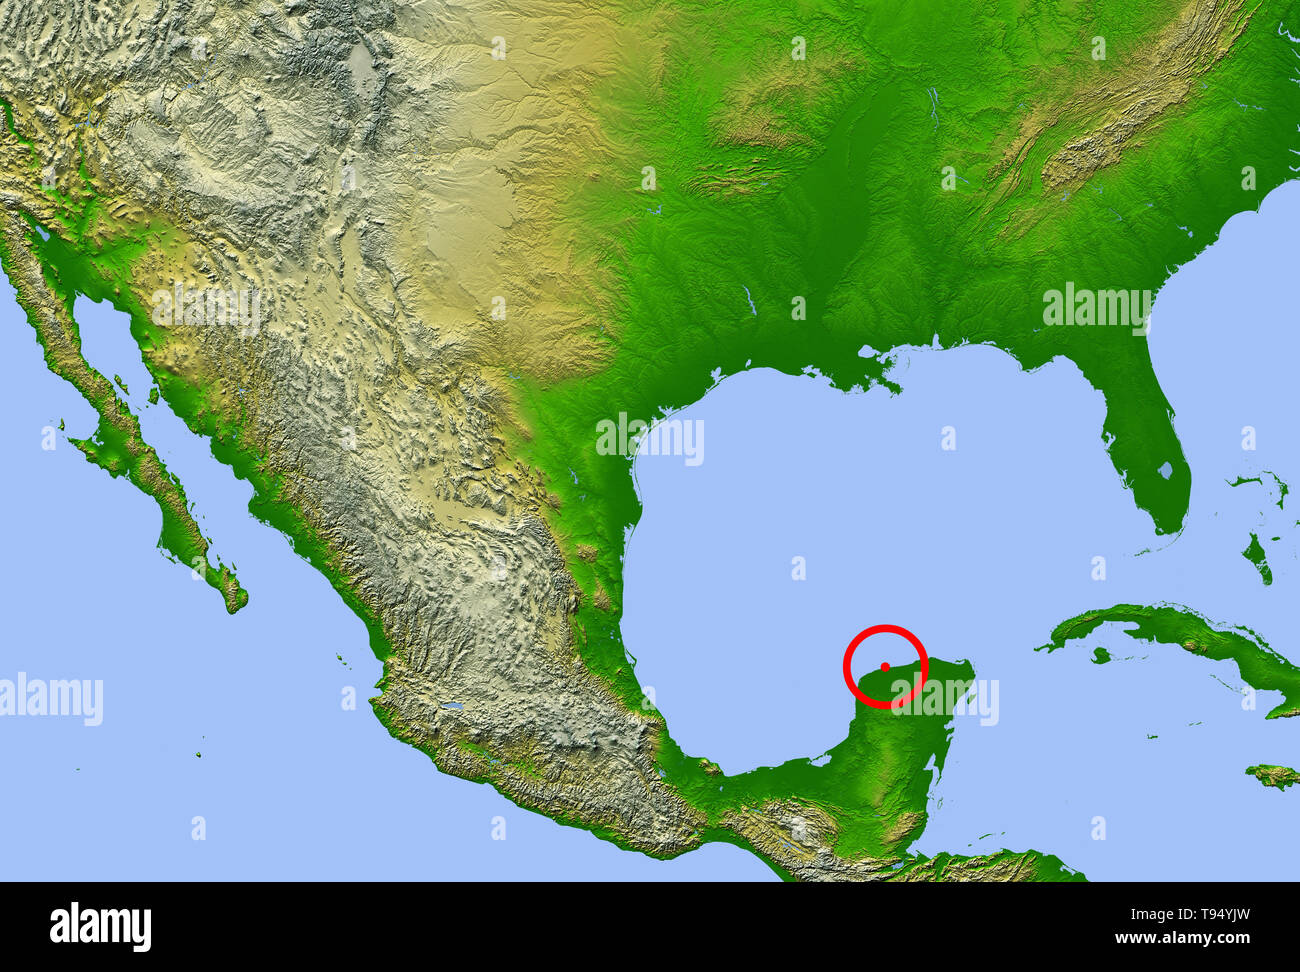 Chicxulub Krater. Karte mit der Lage der Chicxulub Krater (Mitte) auf der Halbinsel Yucatan, Mexiko. Diese Auswirkungen können das Aussterben der Dinosaurier und 70% der Arten vor 65 Millionen Jahren die Erde verursacht haben. Die vier roten Punkte stellen die Städte (von links nach rechts): Mexico City, Tempico (bei denen Material aus dem Krater ausgeworfen wurde gefunden), Havanna und Miami. Stockfoto